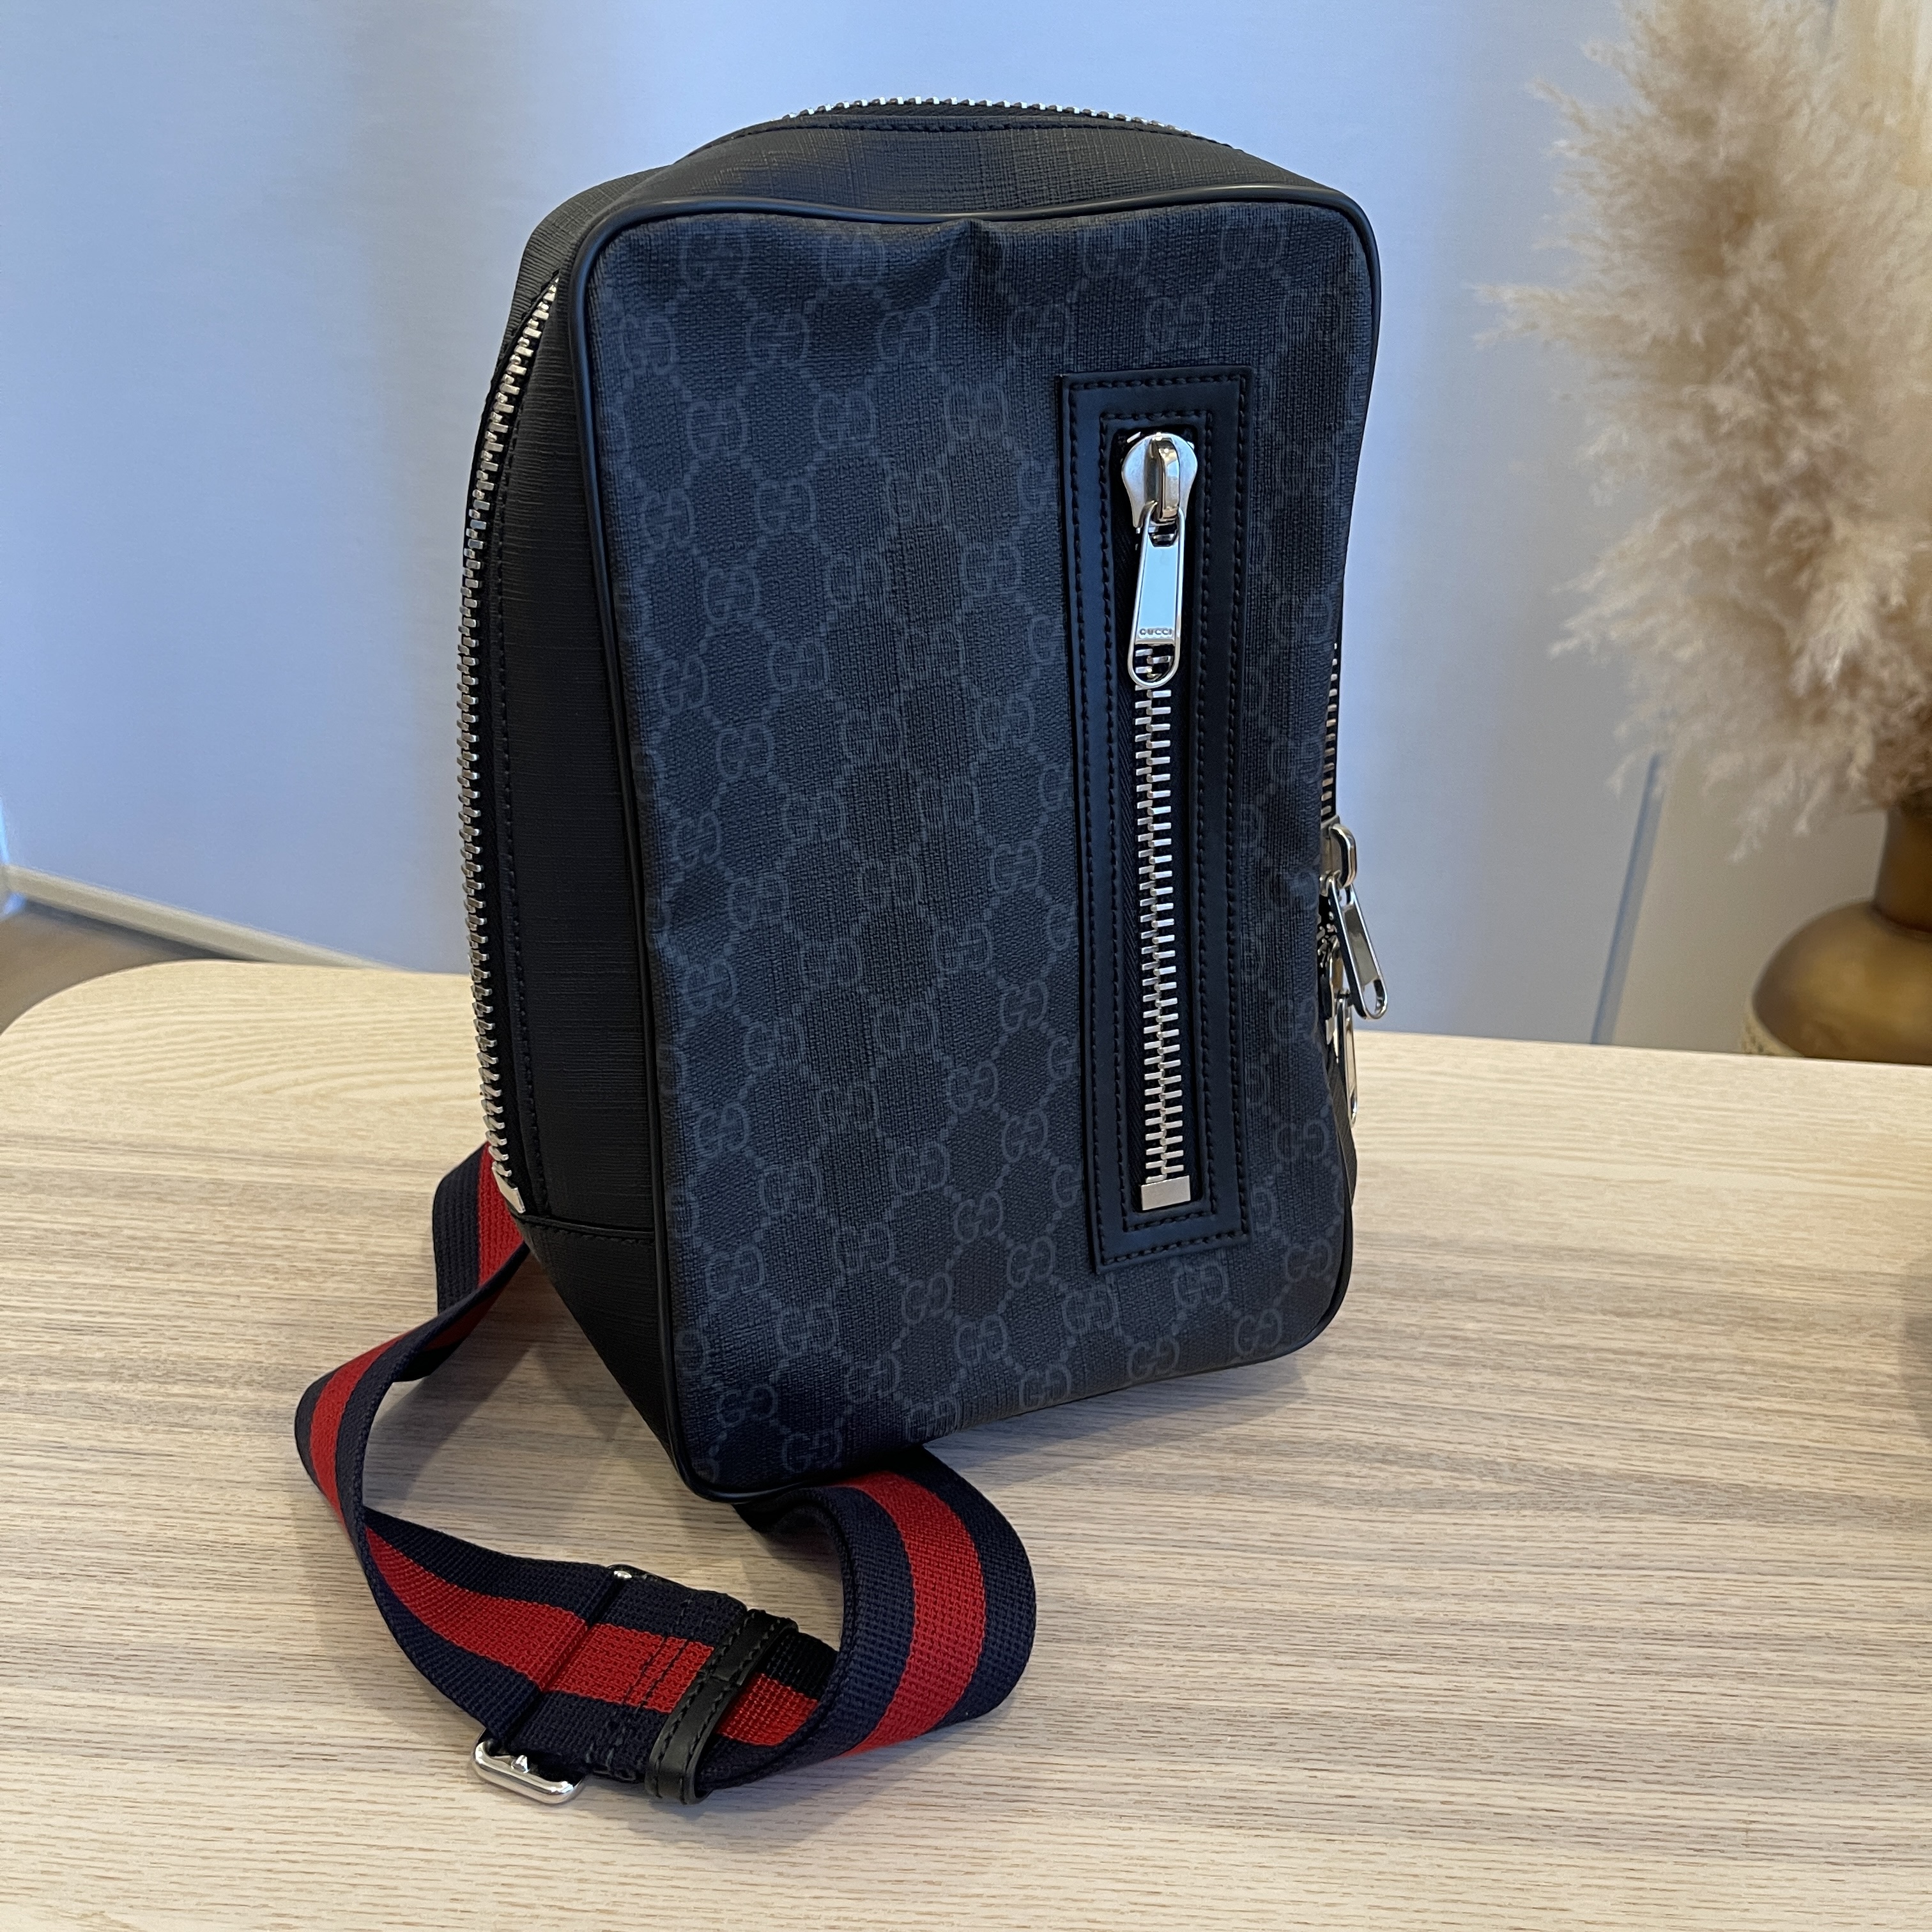 GG Black sling backpack